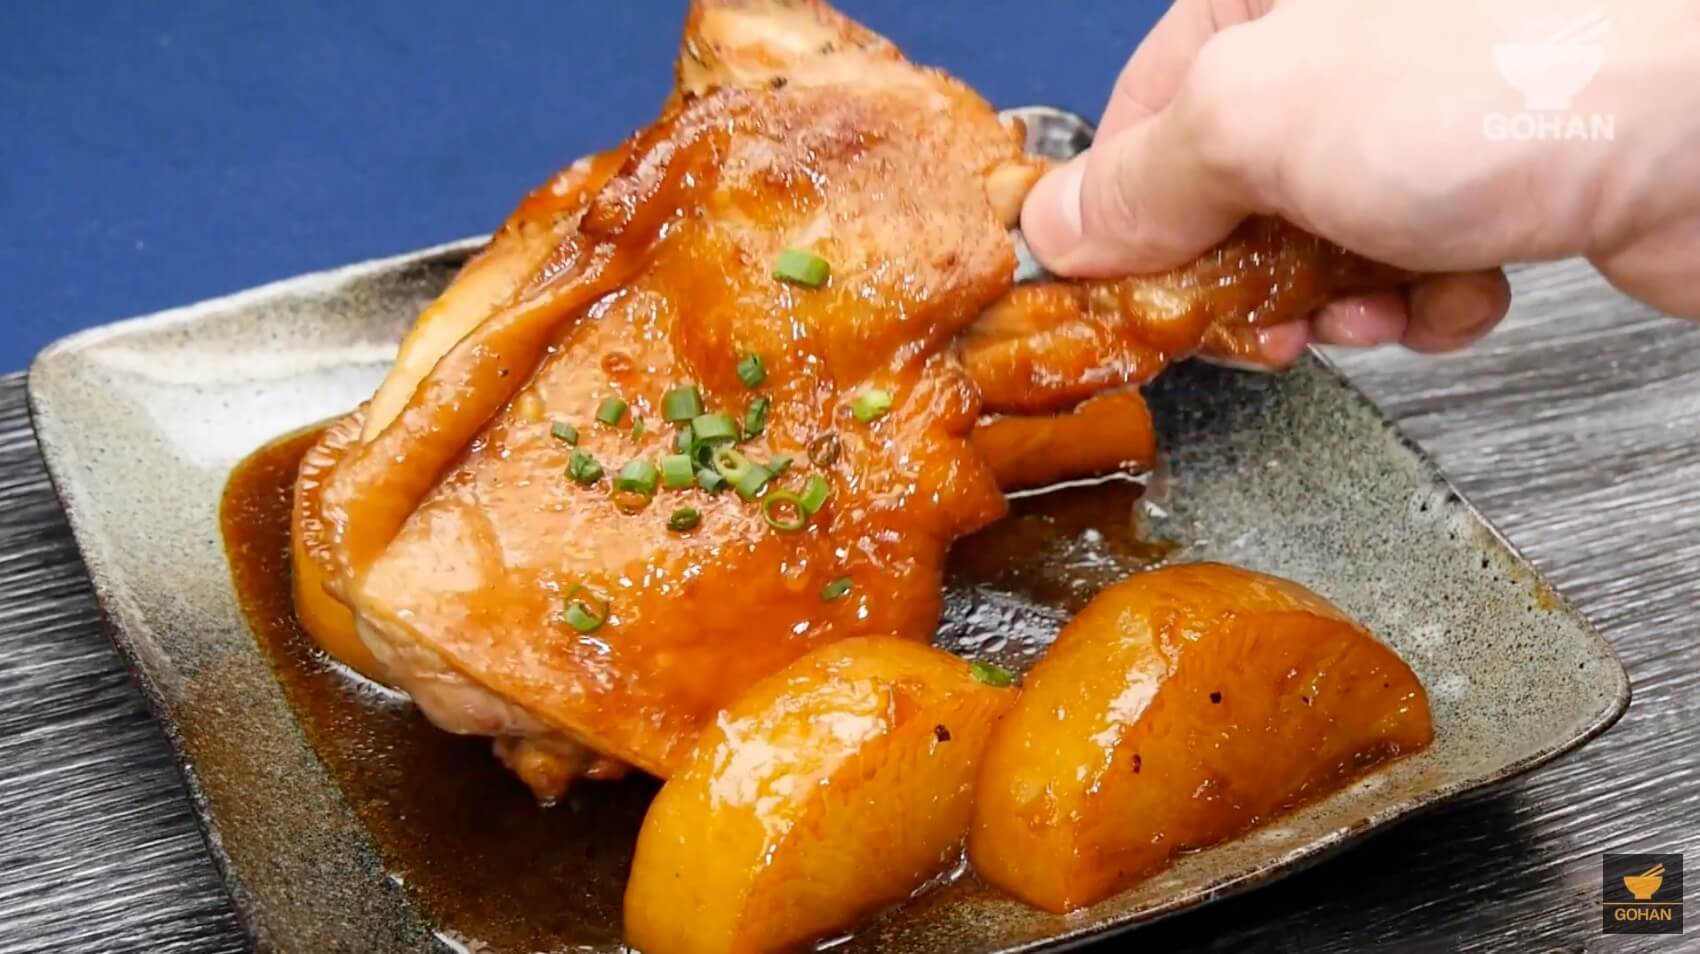 ホロホロの鶏肉が最高 骨つき鶏と大根のビール煮 の作り方 簡単男飯レシピ 作り方 Gohan